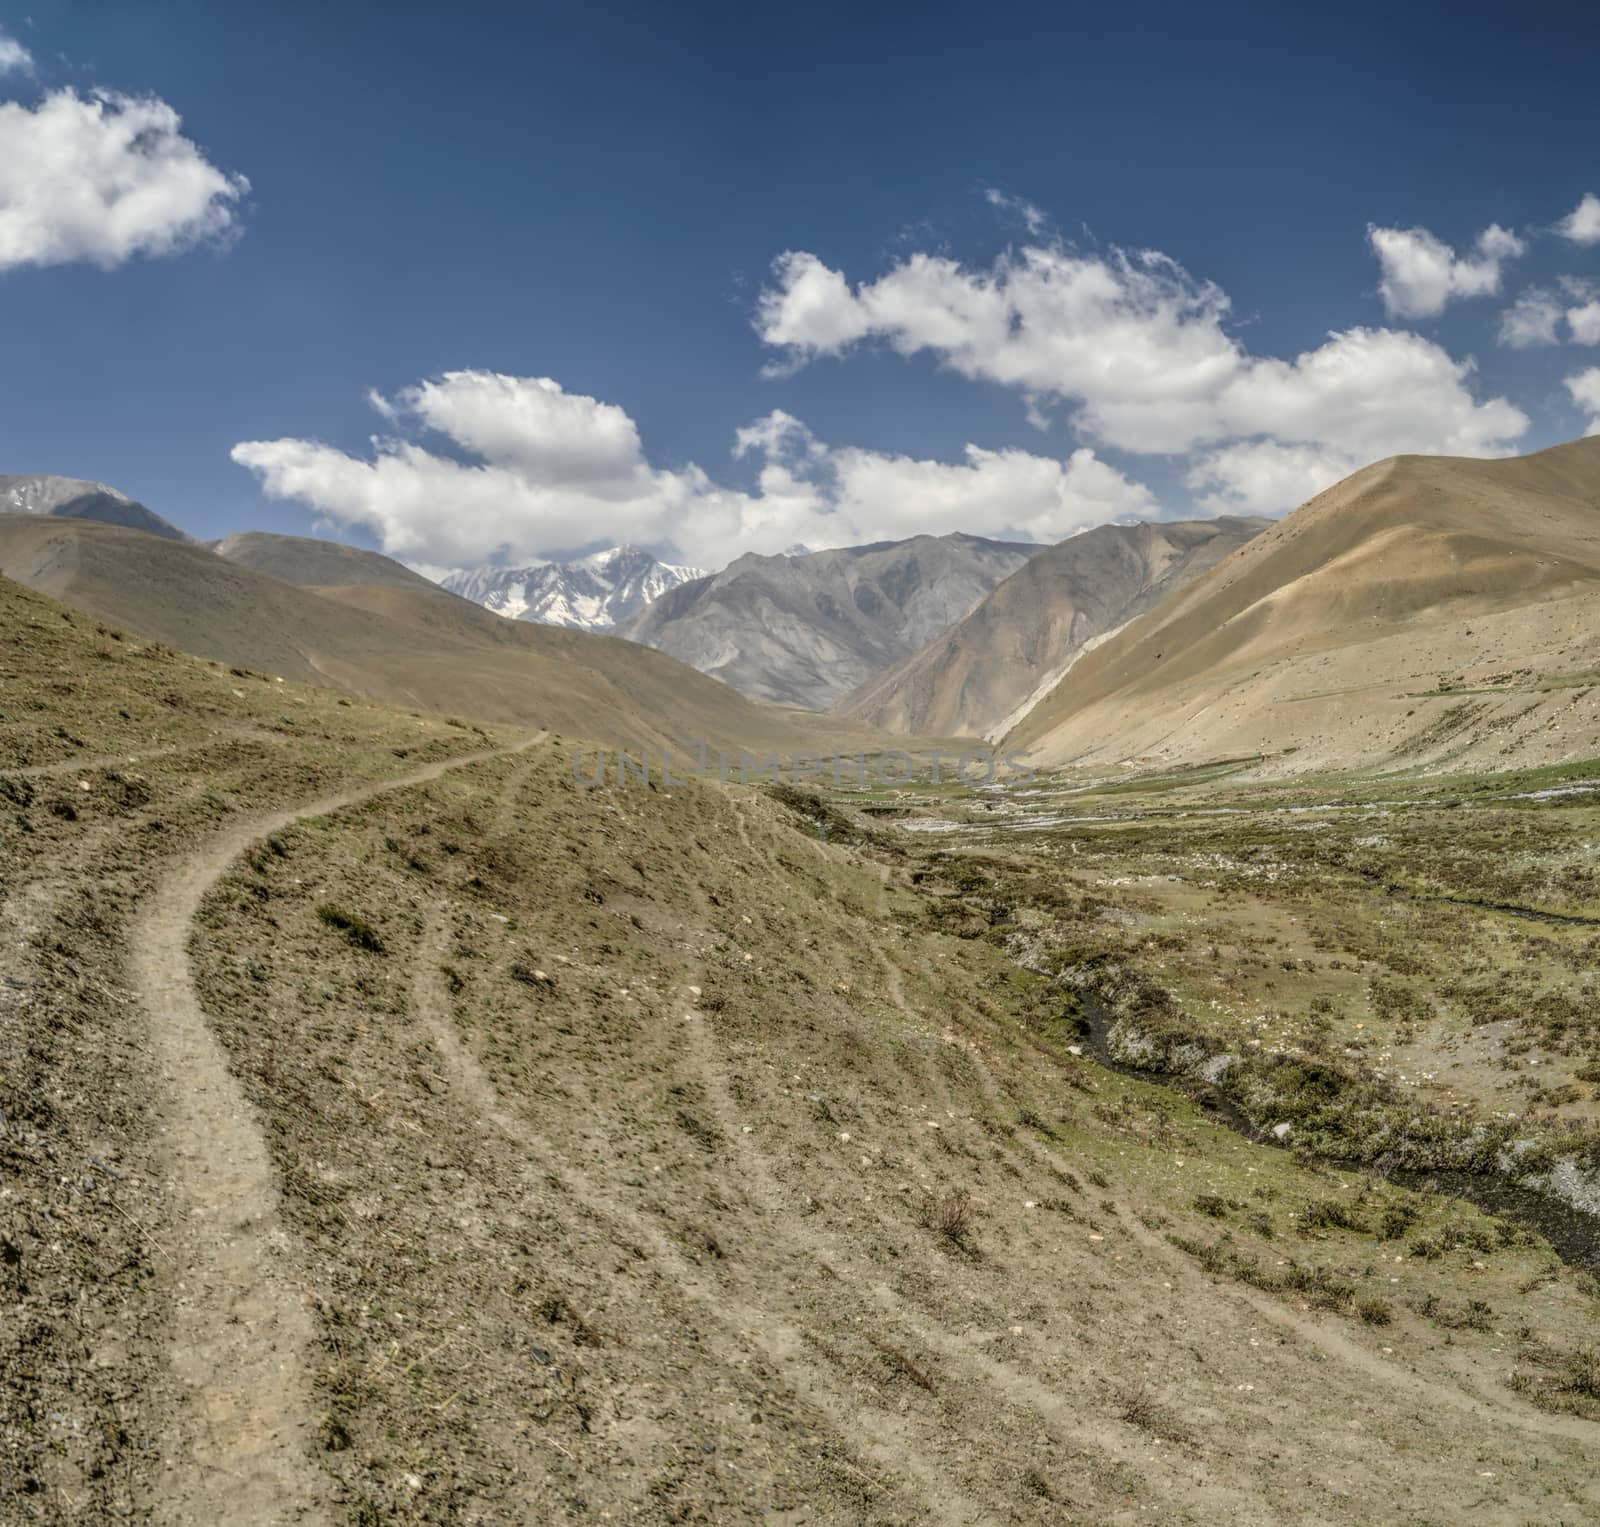 Scenic valley in Dolpo region in Nepal